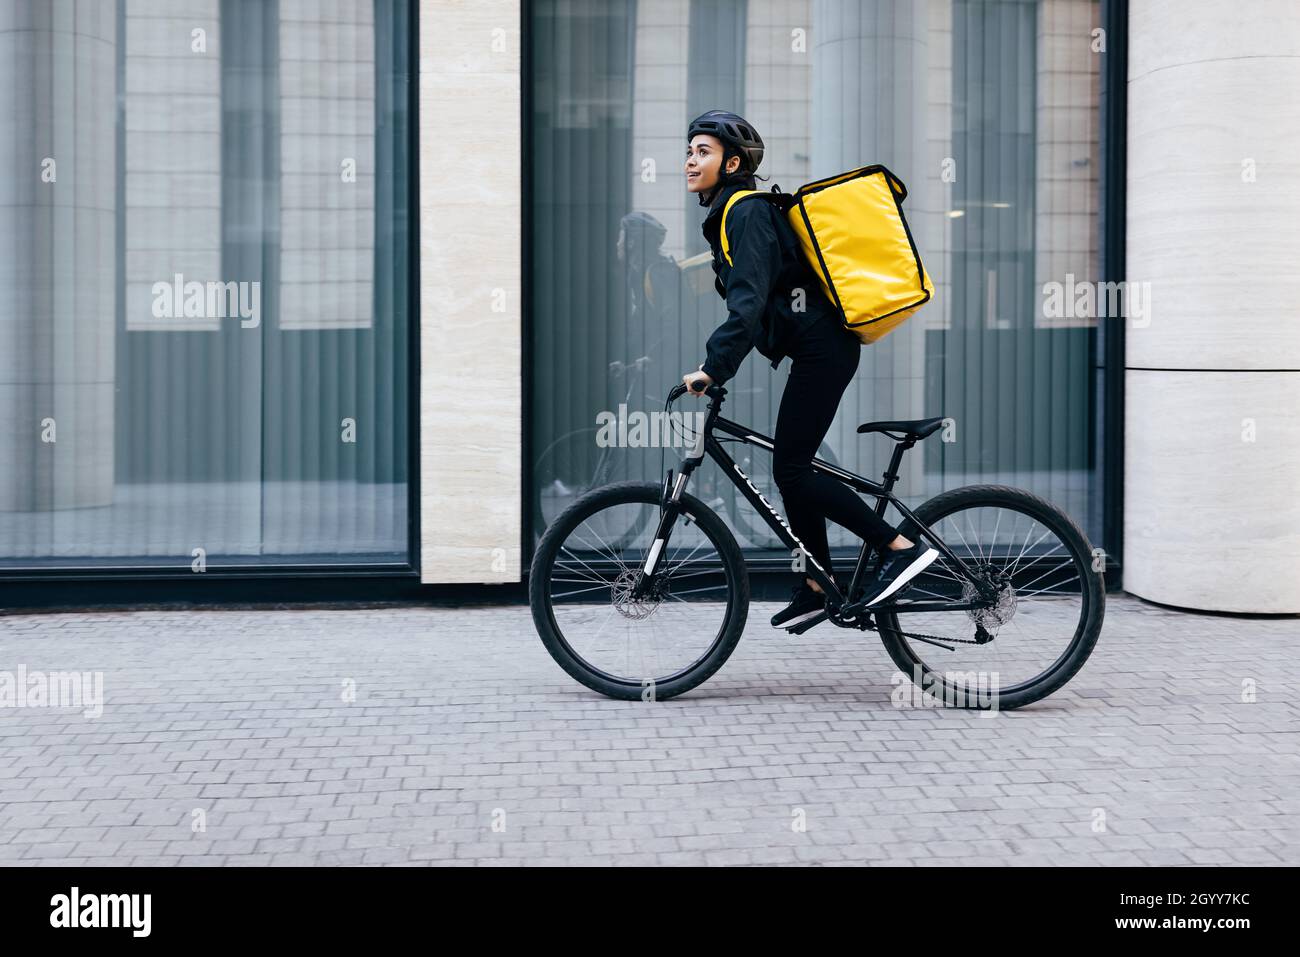 Vue latérale d'une jeune femme à vélo dans la ville.Coursier avec un sac à dos thermique en son chemin pour livrer la nourriture à un client. Banque D'Images